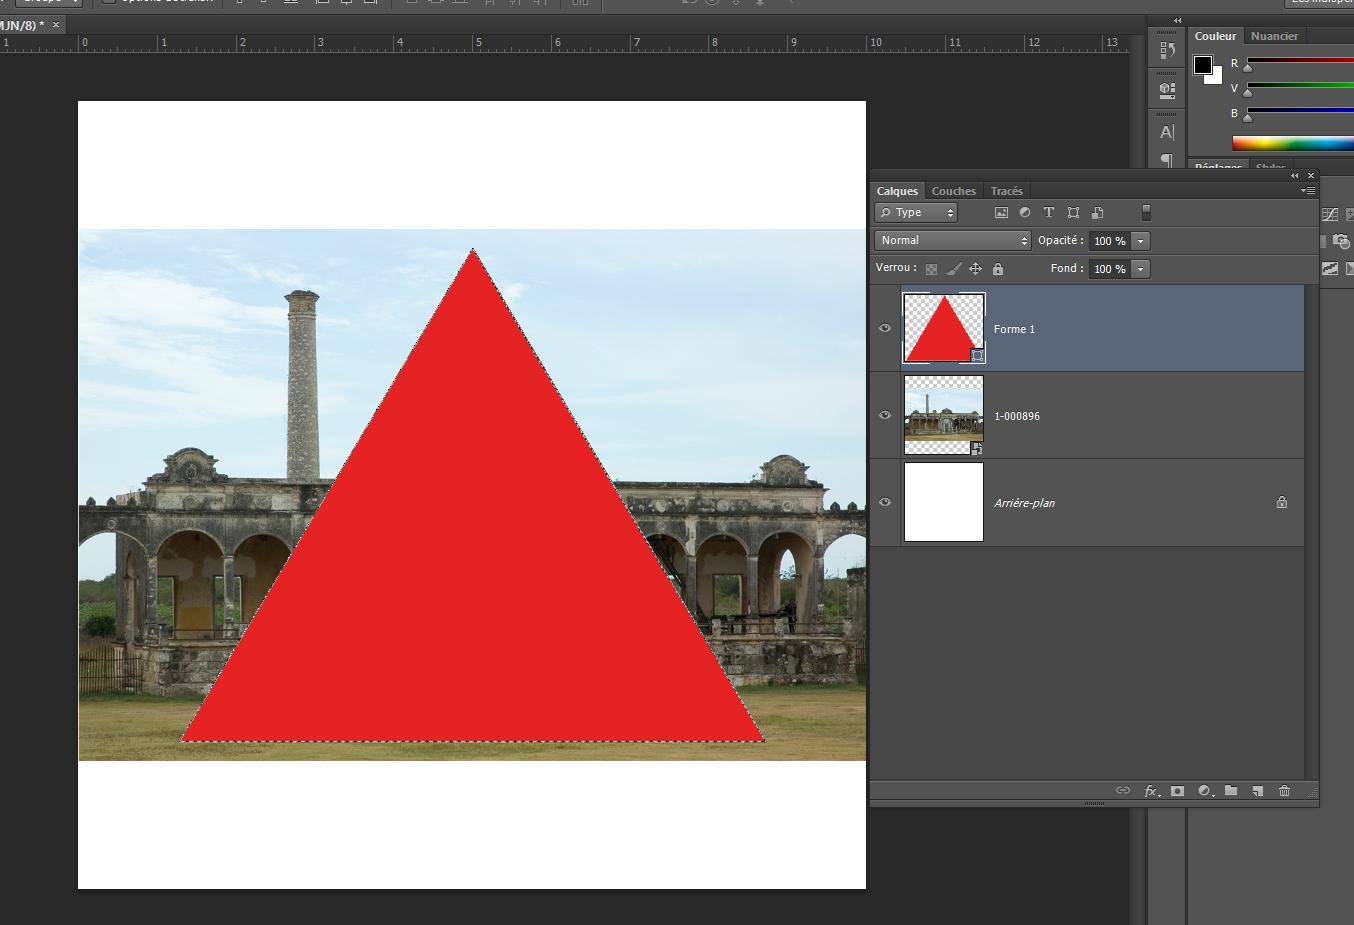 Ici nous voulons récupérer la sélection du contour du triangle rouge pour venir masquer notre image selon cette sélection.